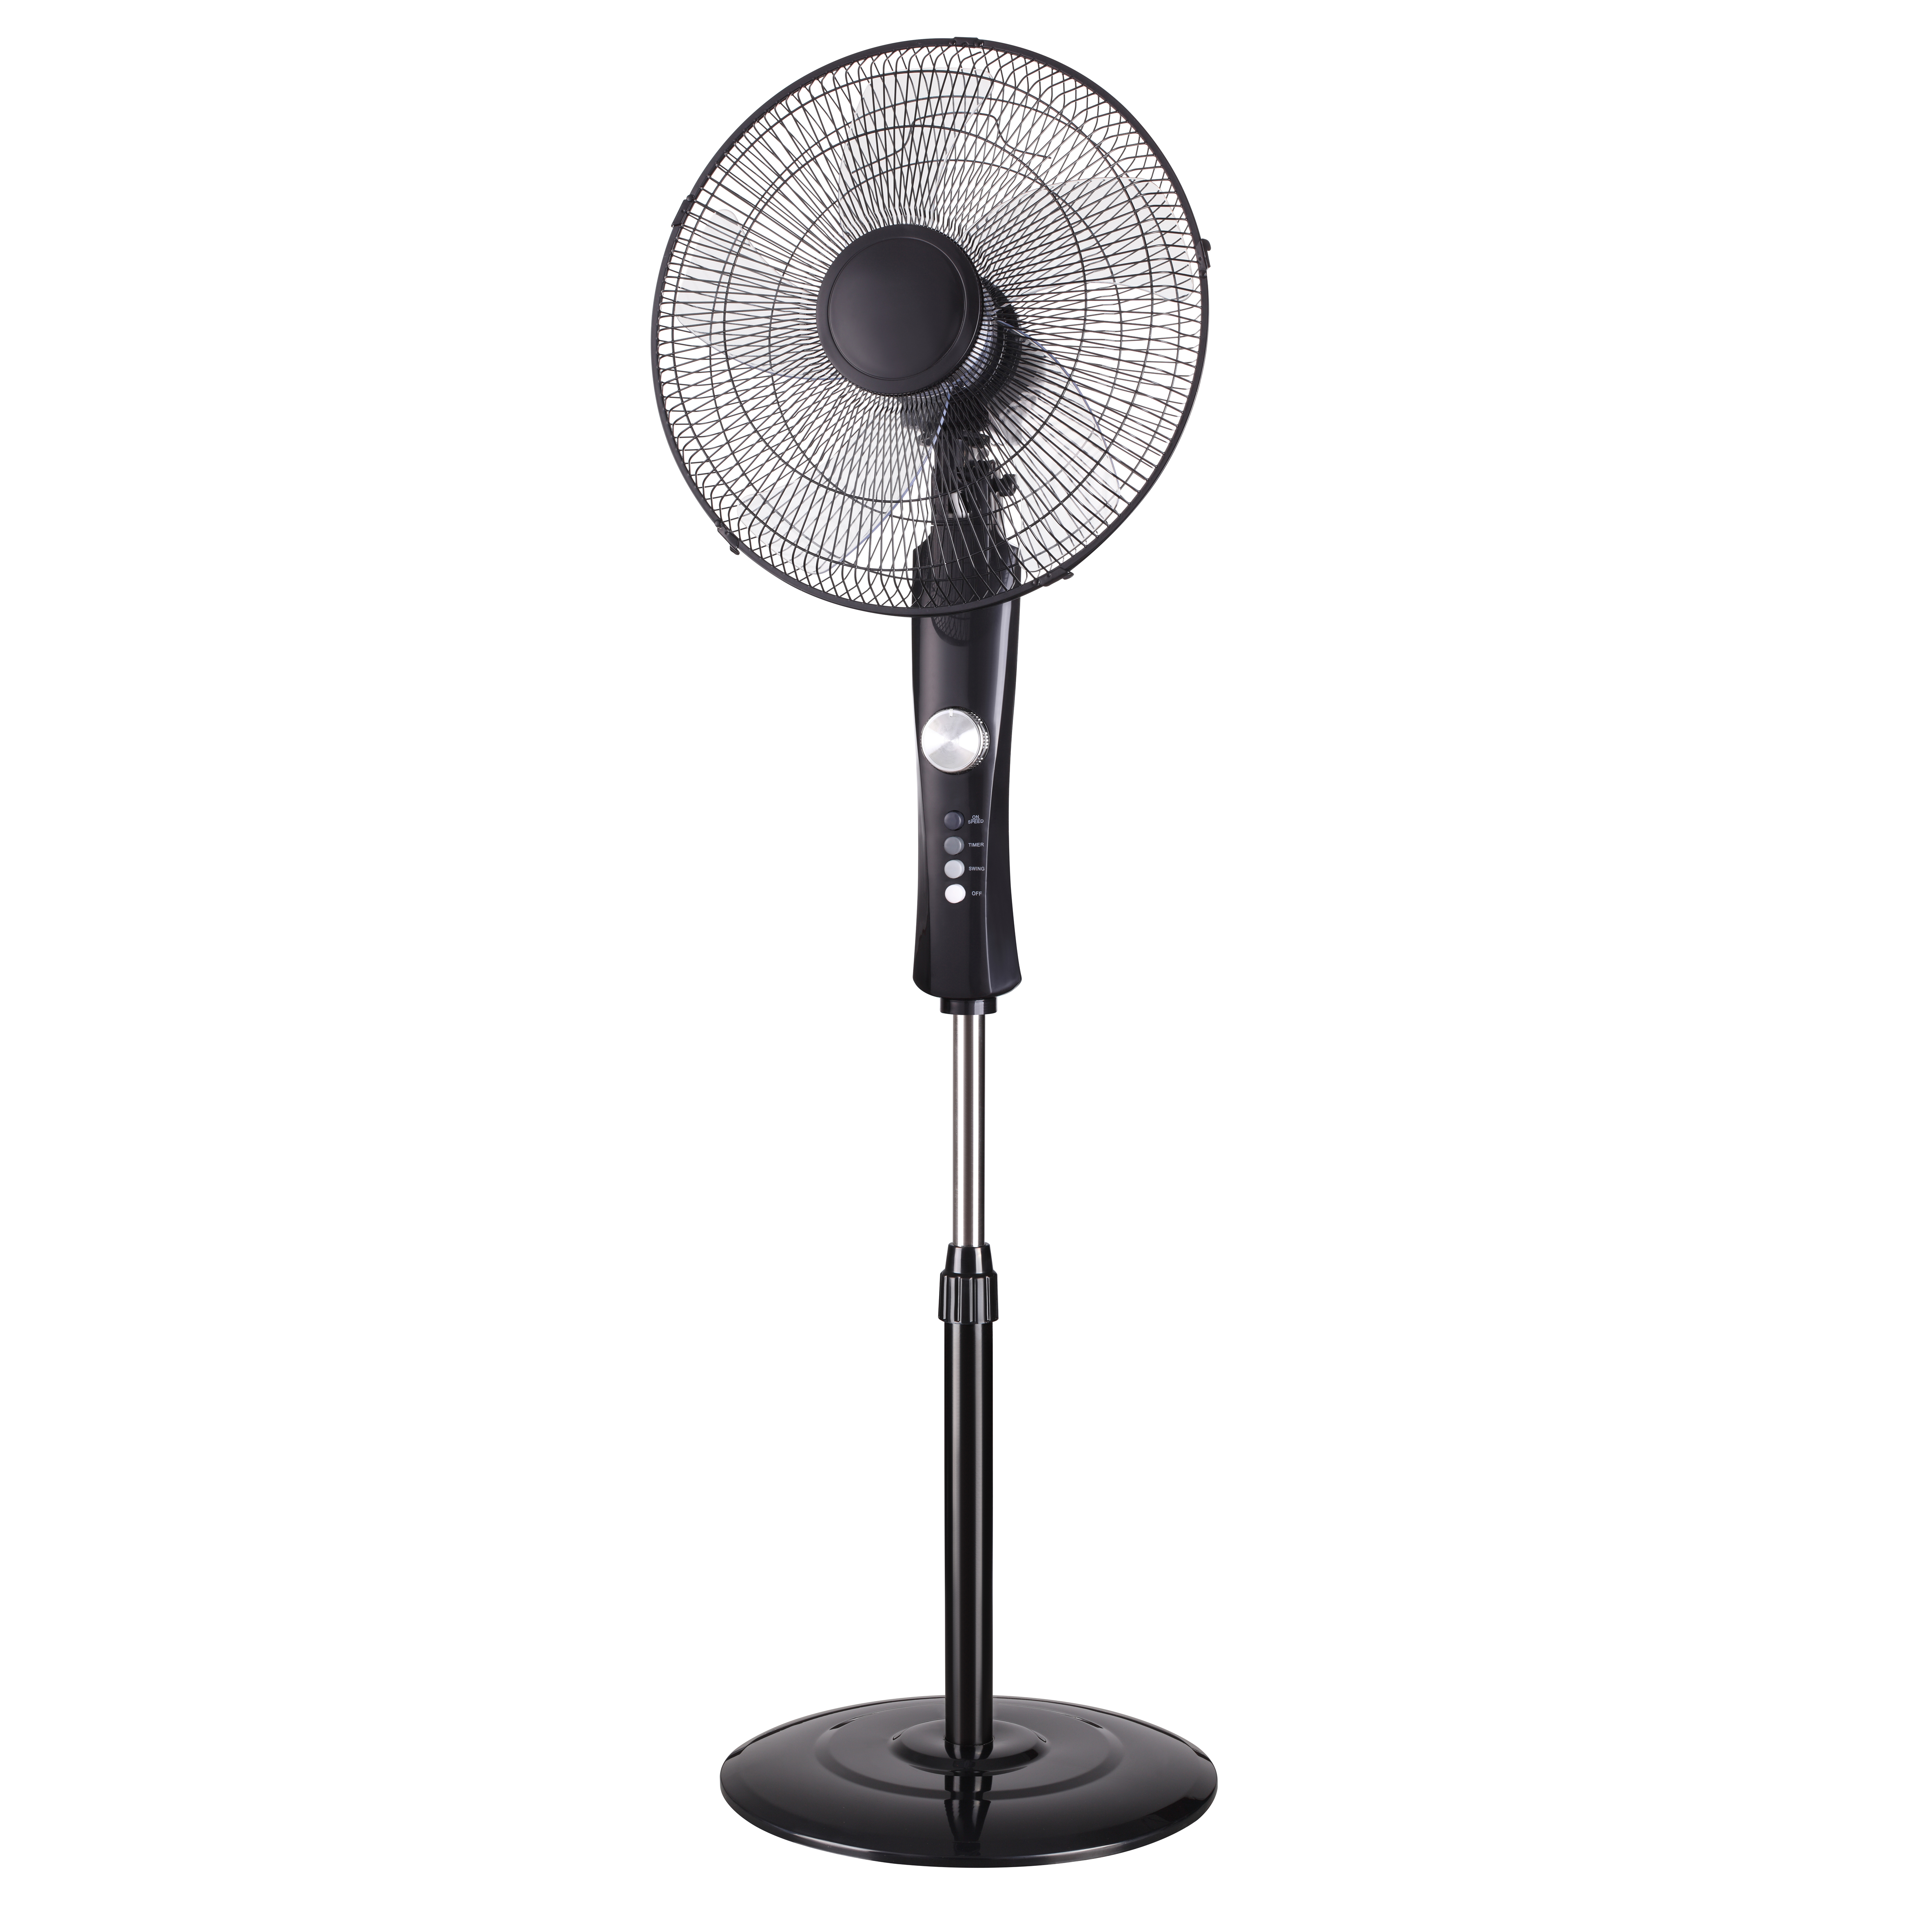 5 AS Blades 16" electric standing fan oscillating pedestal fan